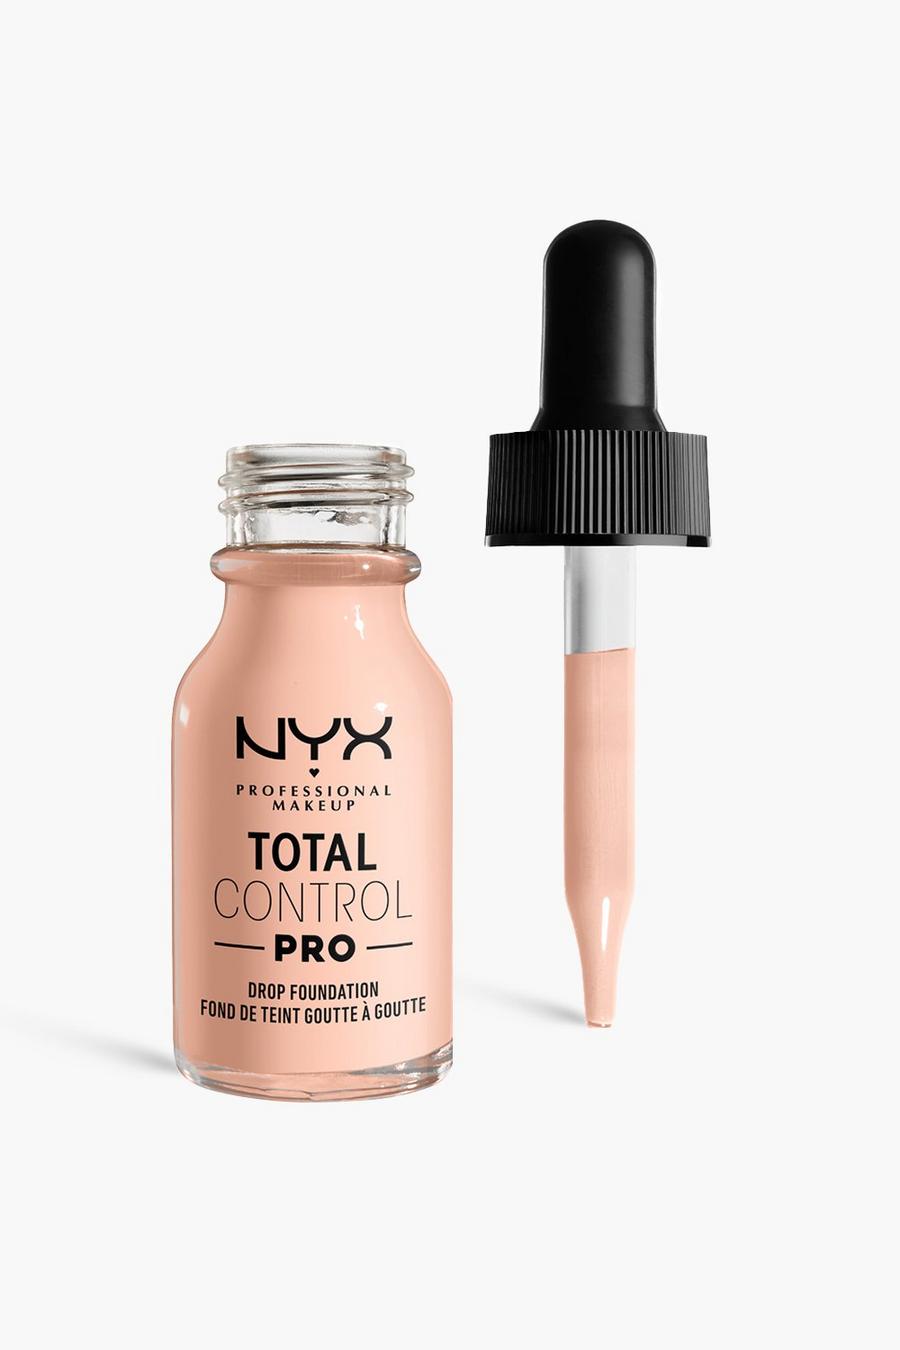 NYX Professional Makeup - Fond de teint couvrant - Total Control, Light porcelain